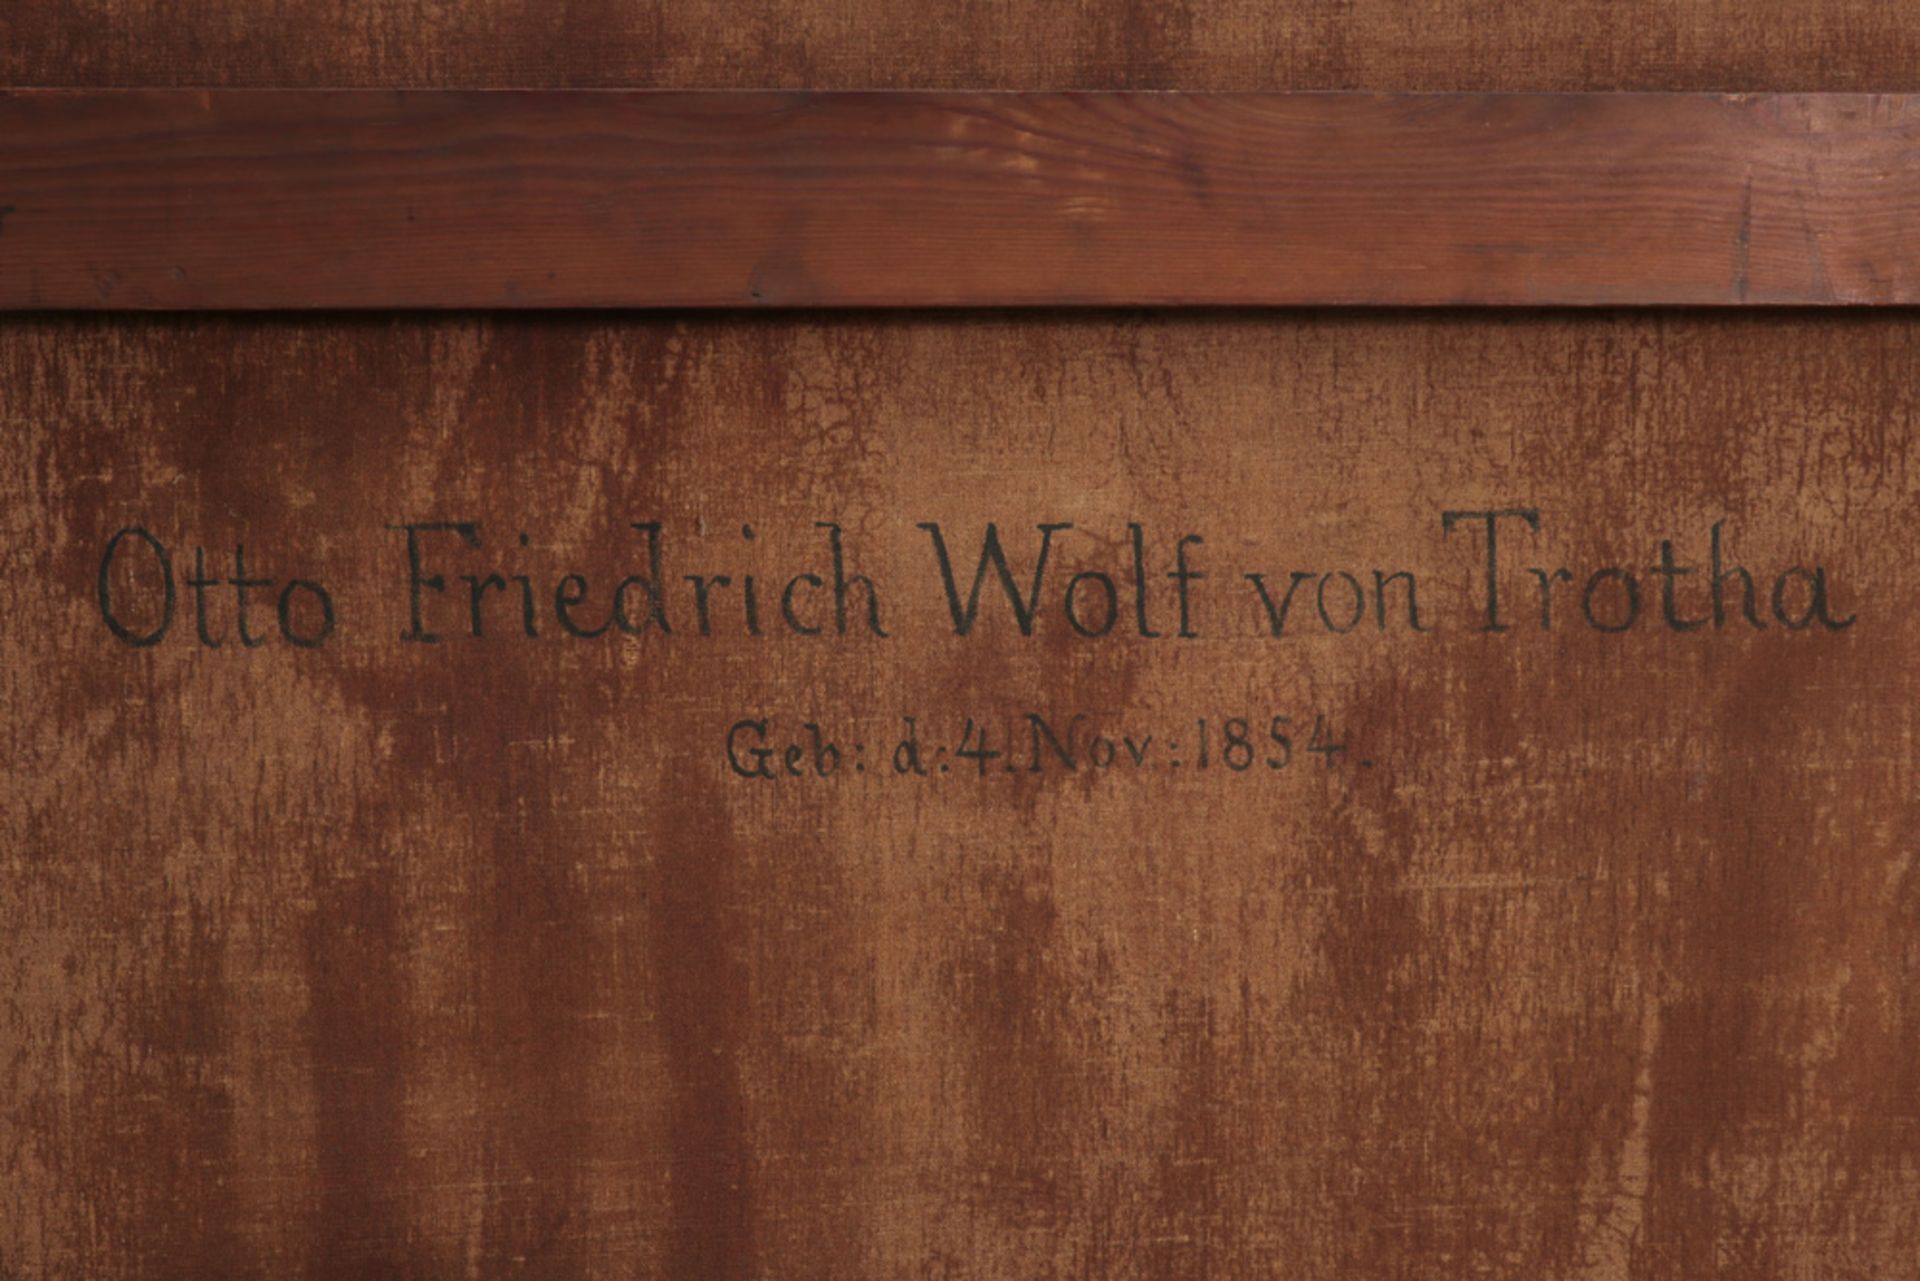 19th Cent. German oil on canvas with a protrait of Otto Friedrich Wolf von Trotha (° 4/11/1854) - - Bild 5 aus 5